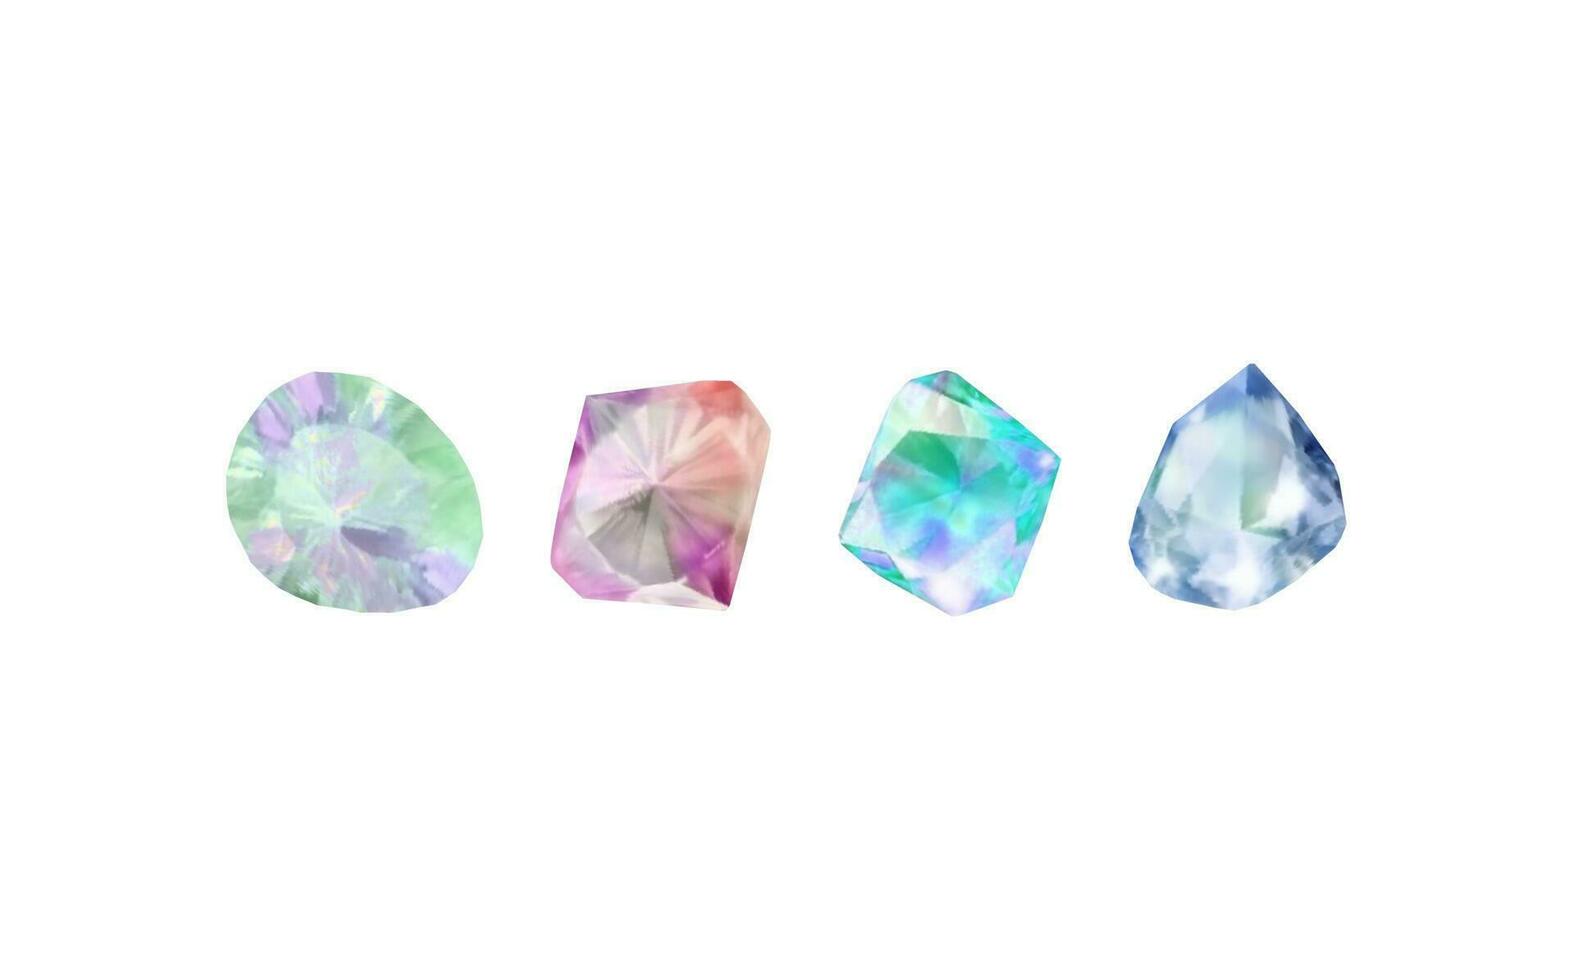 uma coleção do imagens do diamantes do vários geométrico formas, cores e tamanhos.vidro brilhante cristais com diferente tons refletindo vetor de luz realista conjunto do brilho pedra preciosa ou colorida gelo.